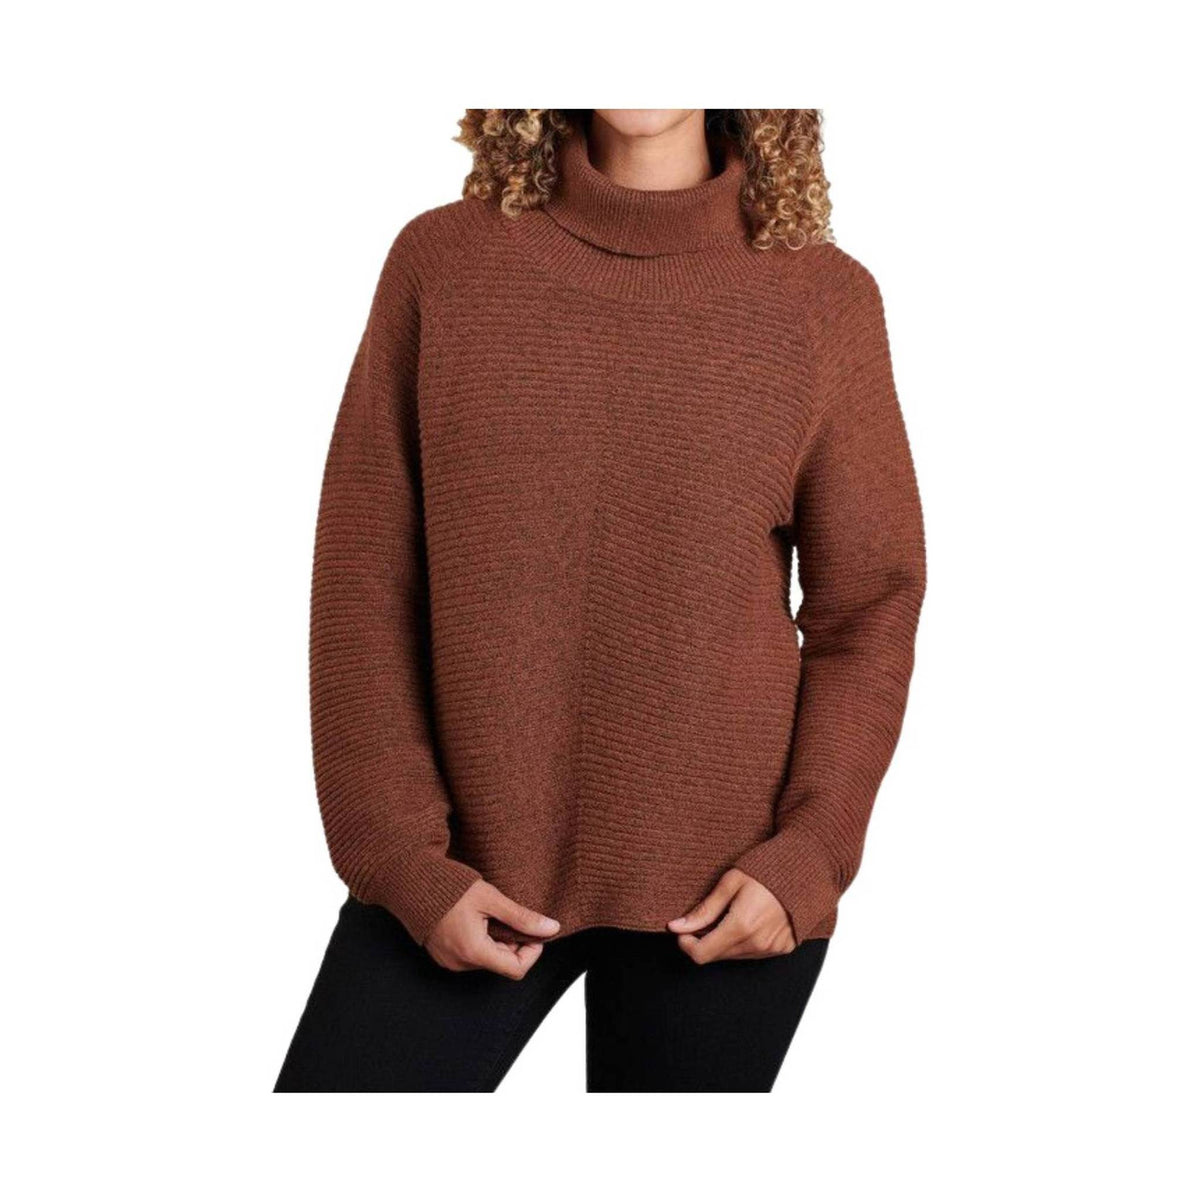 Kuhl Women's Solace Sweater - Zinfandel